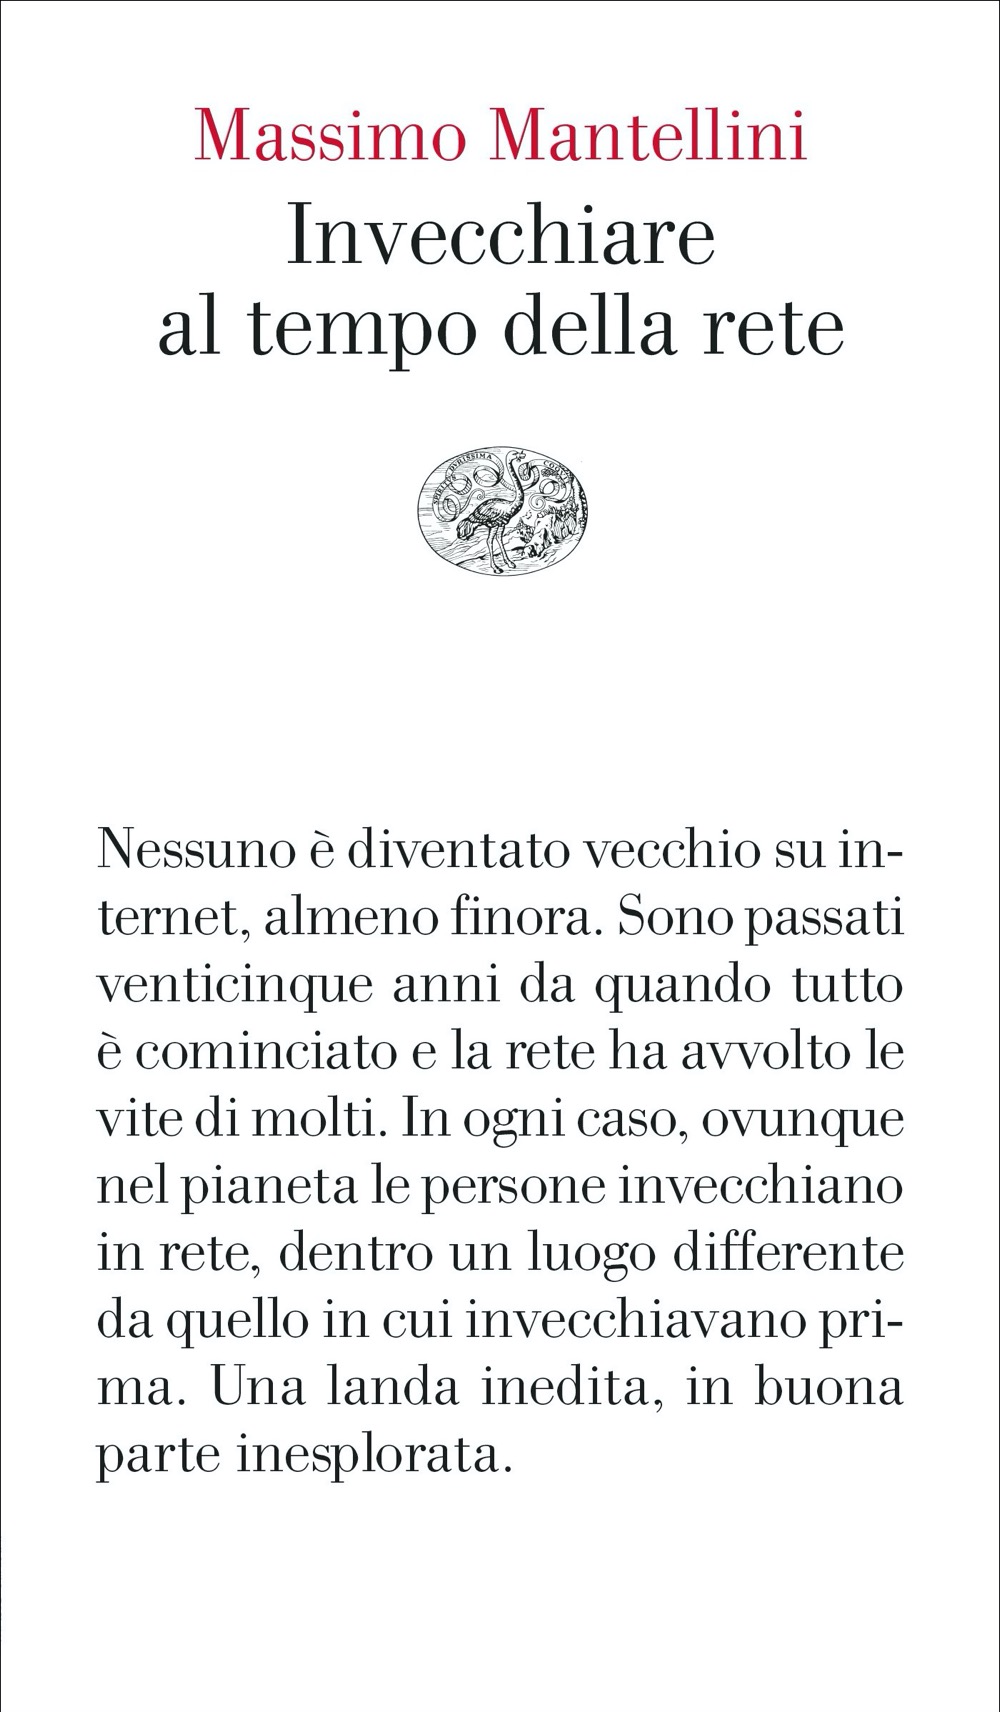 Massimo Mantellini: Invecchiare al tempo della rete (Italiano language, Einaudi)